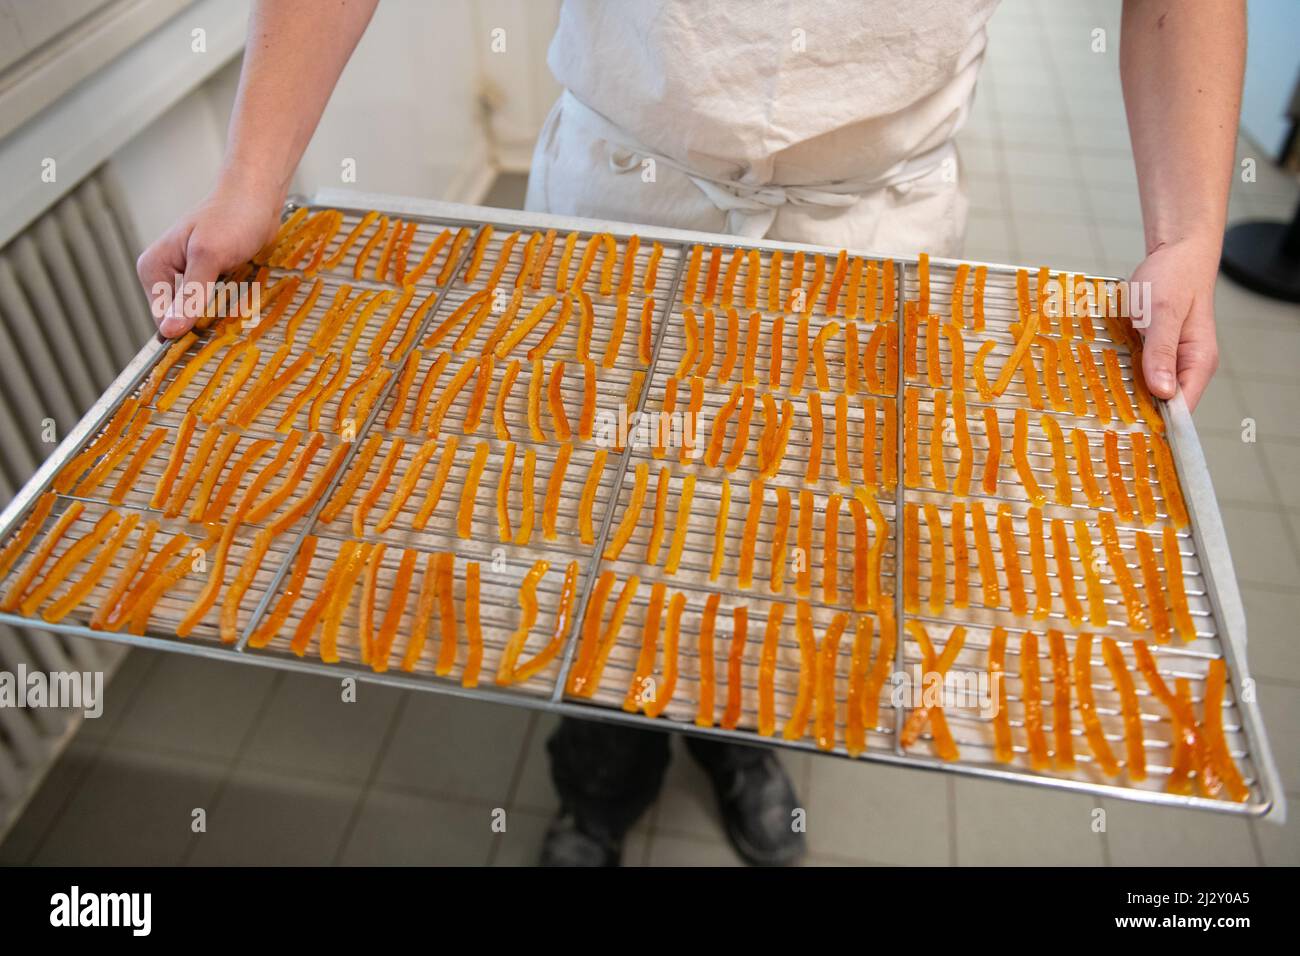 Chocolat dans la Chocolaterie Lionneton, chocolaterie dans le sud-est de la France: Fabrication de "orangettes", pâtes à l'écorce d'orange confites enrobées dans un Th Banque D'Images